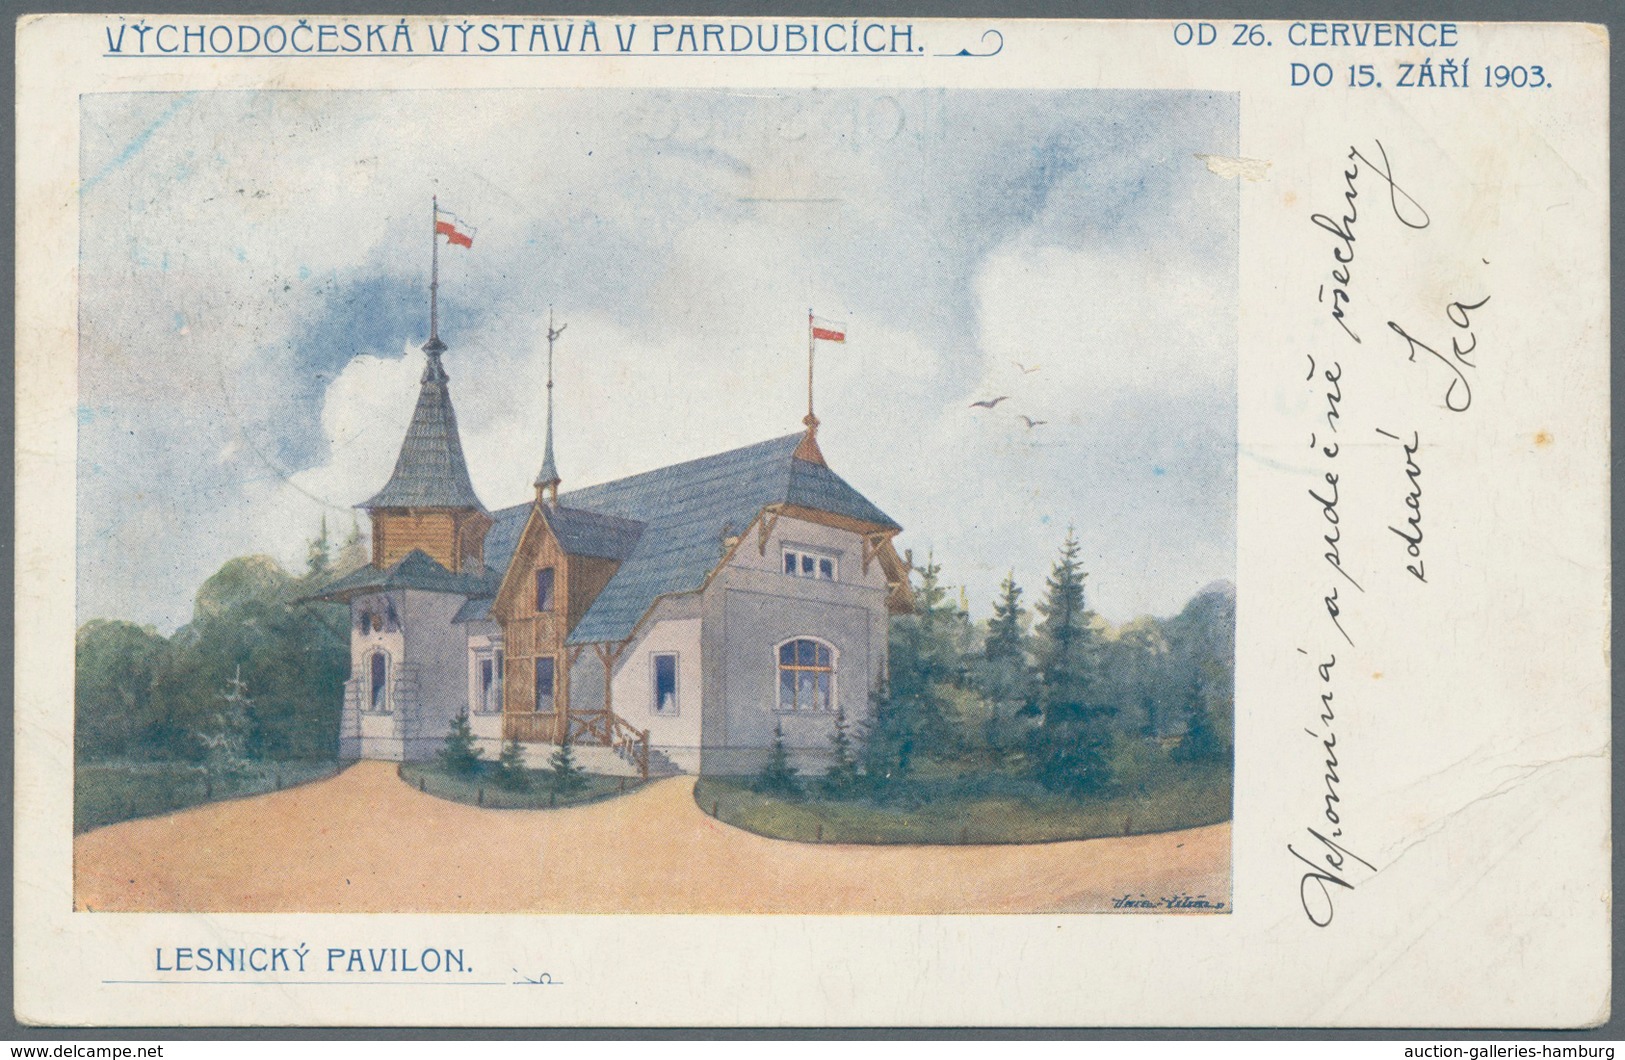 Österreich - Sonderstempel: 1903 (9. bis 15.8.), vier verschiedene Ausstellungskarten (Lesnicky Pavi